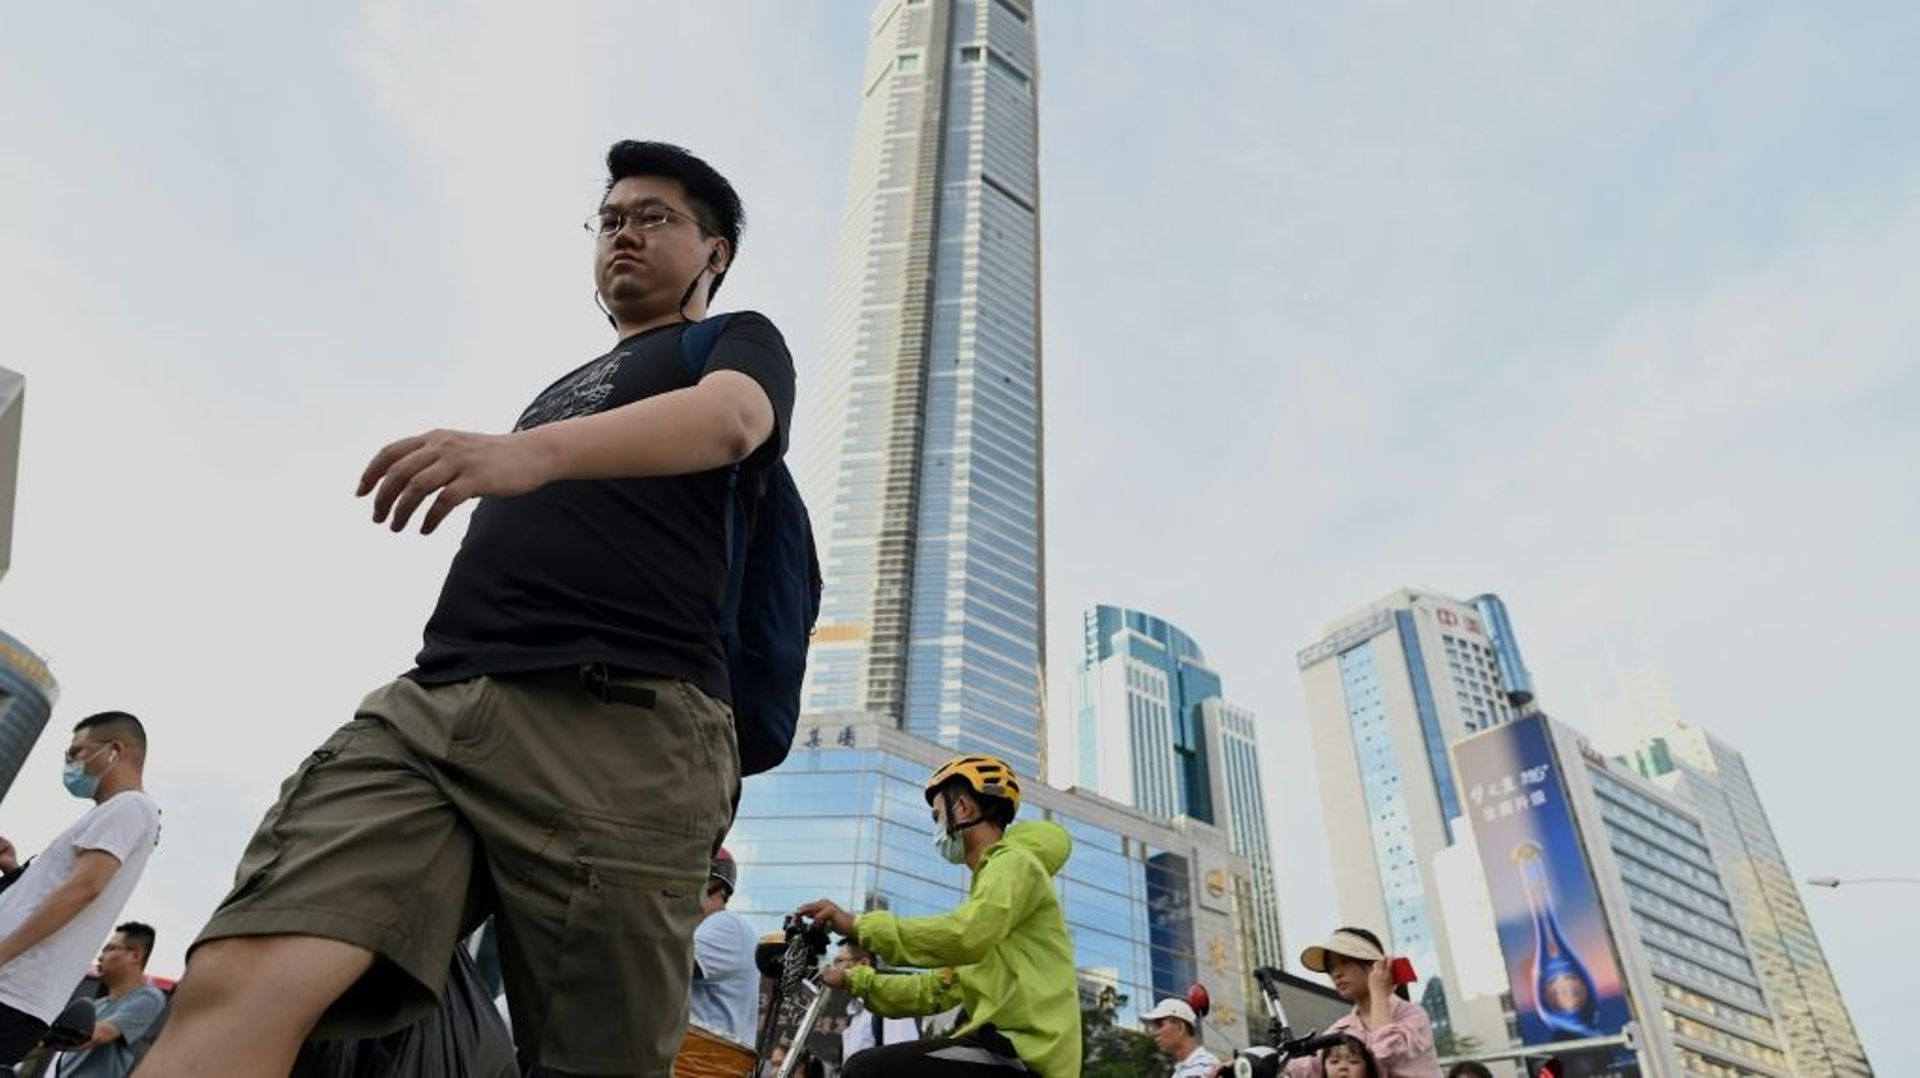 Des gens passent devant le gratte-ciel SEG Plaza, temporairement fermé, dans la ville de Shenzhen (sud de la Chine), le 24 mai 2021